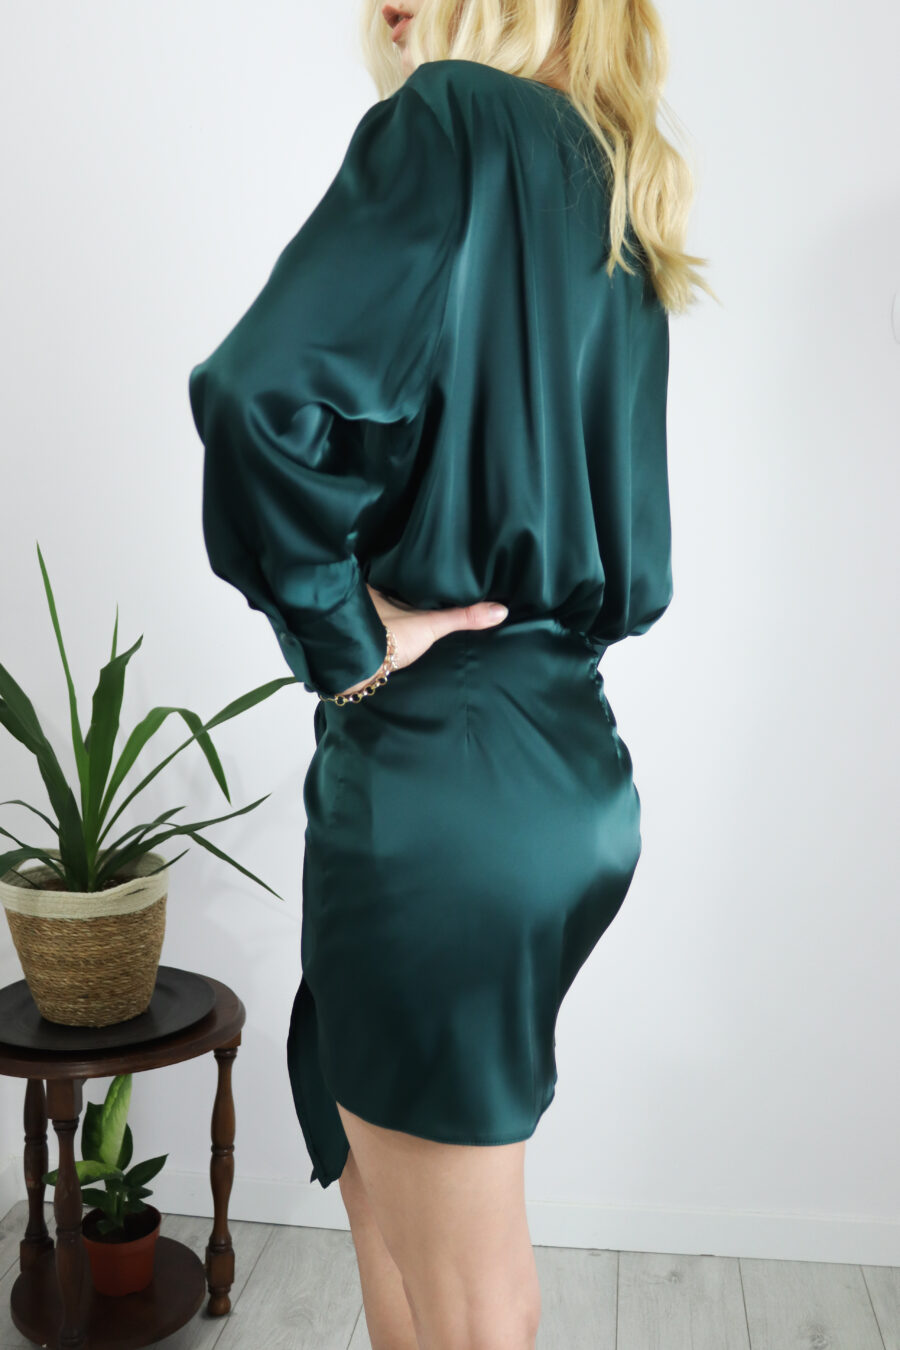 Oxalis - elegancka sukienka z wiązaną spódnicą